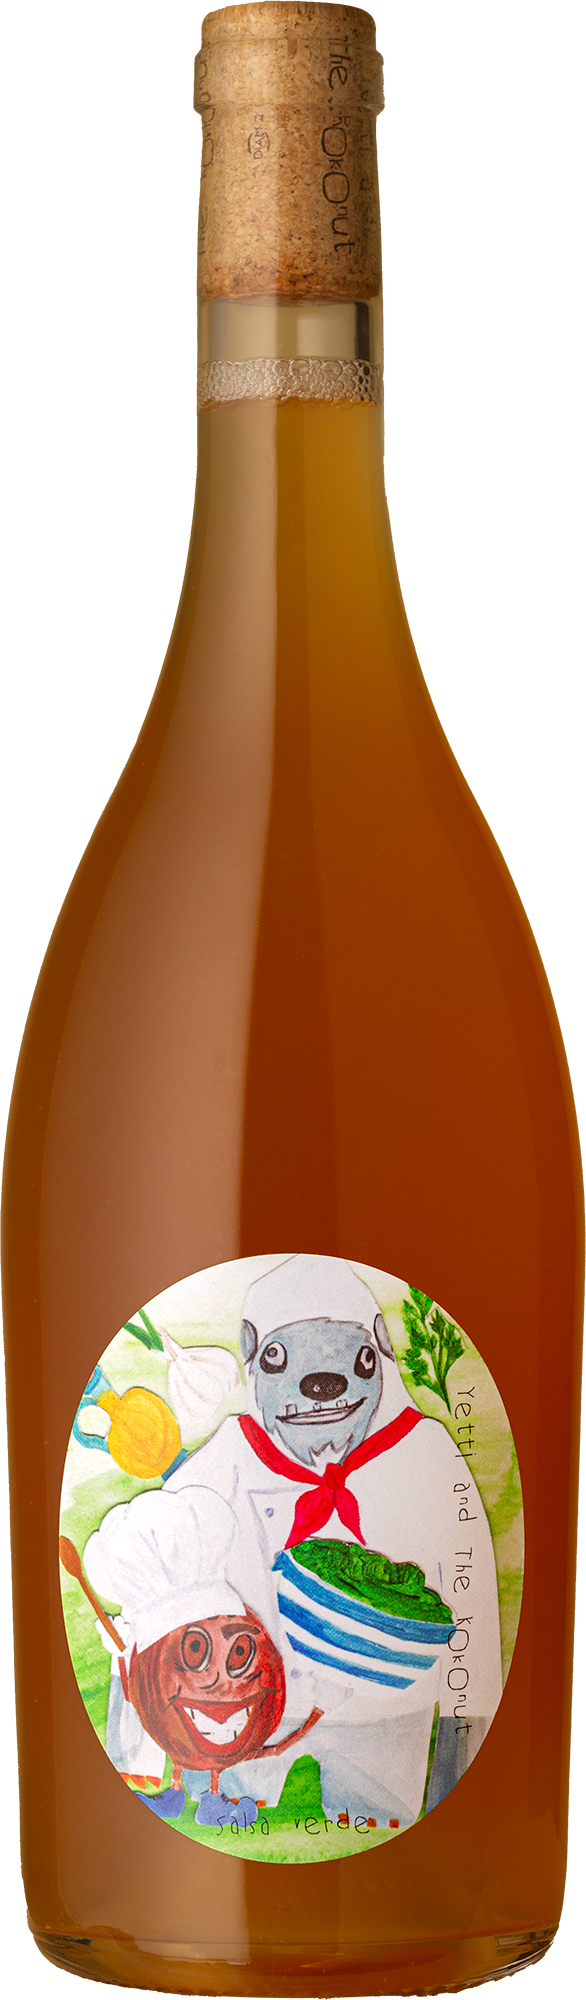 Yetti And The Kokonut - Salsa Verde Verdelho 2021 Orange Wine